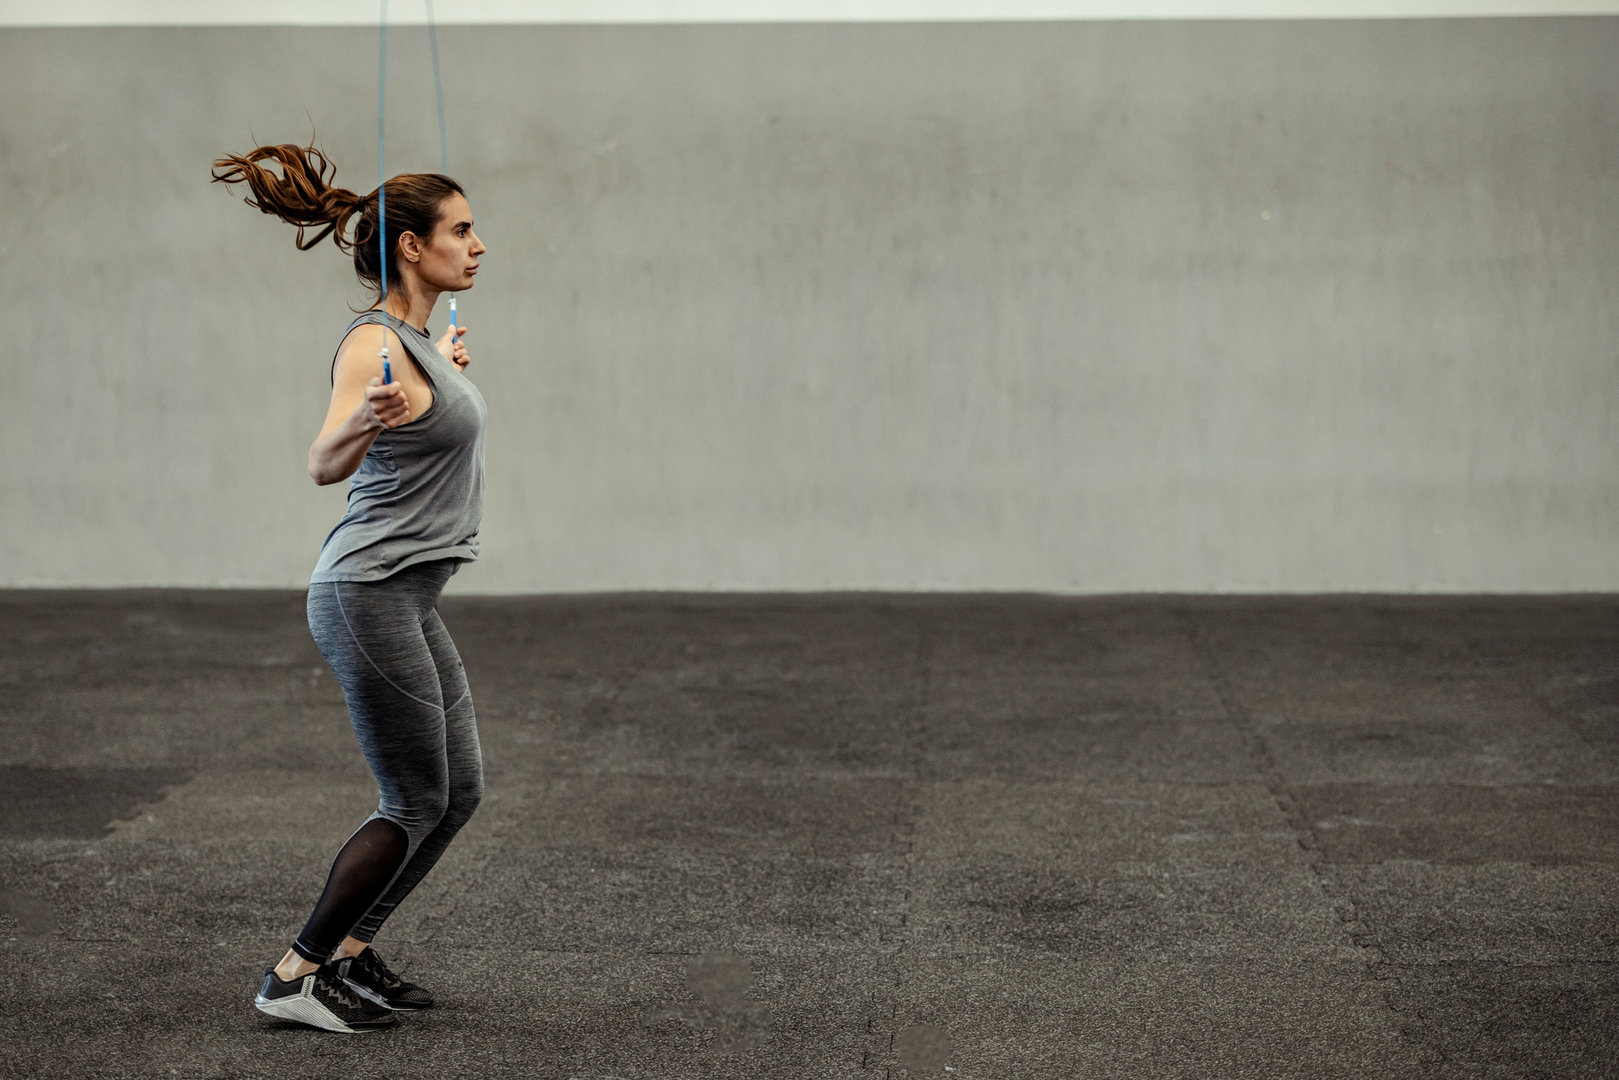 دراسة تكشف وقت ممارسة الرياضة الأكثر فائدة لصحة القلب لدى النساء